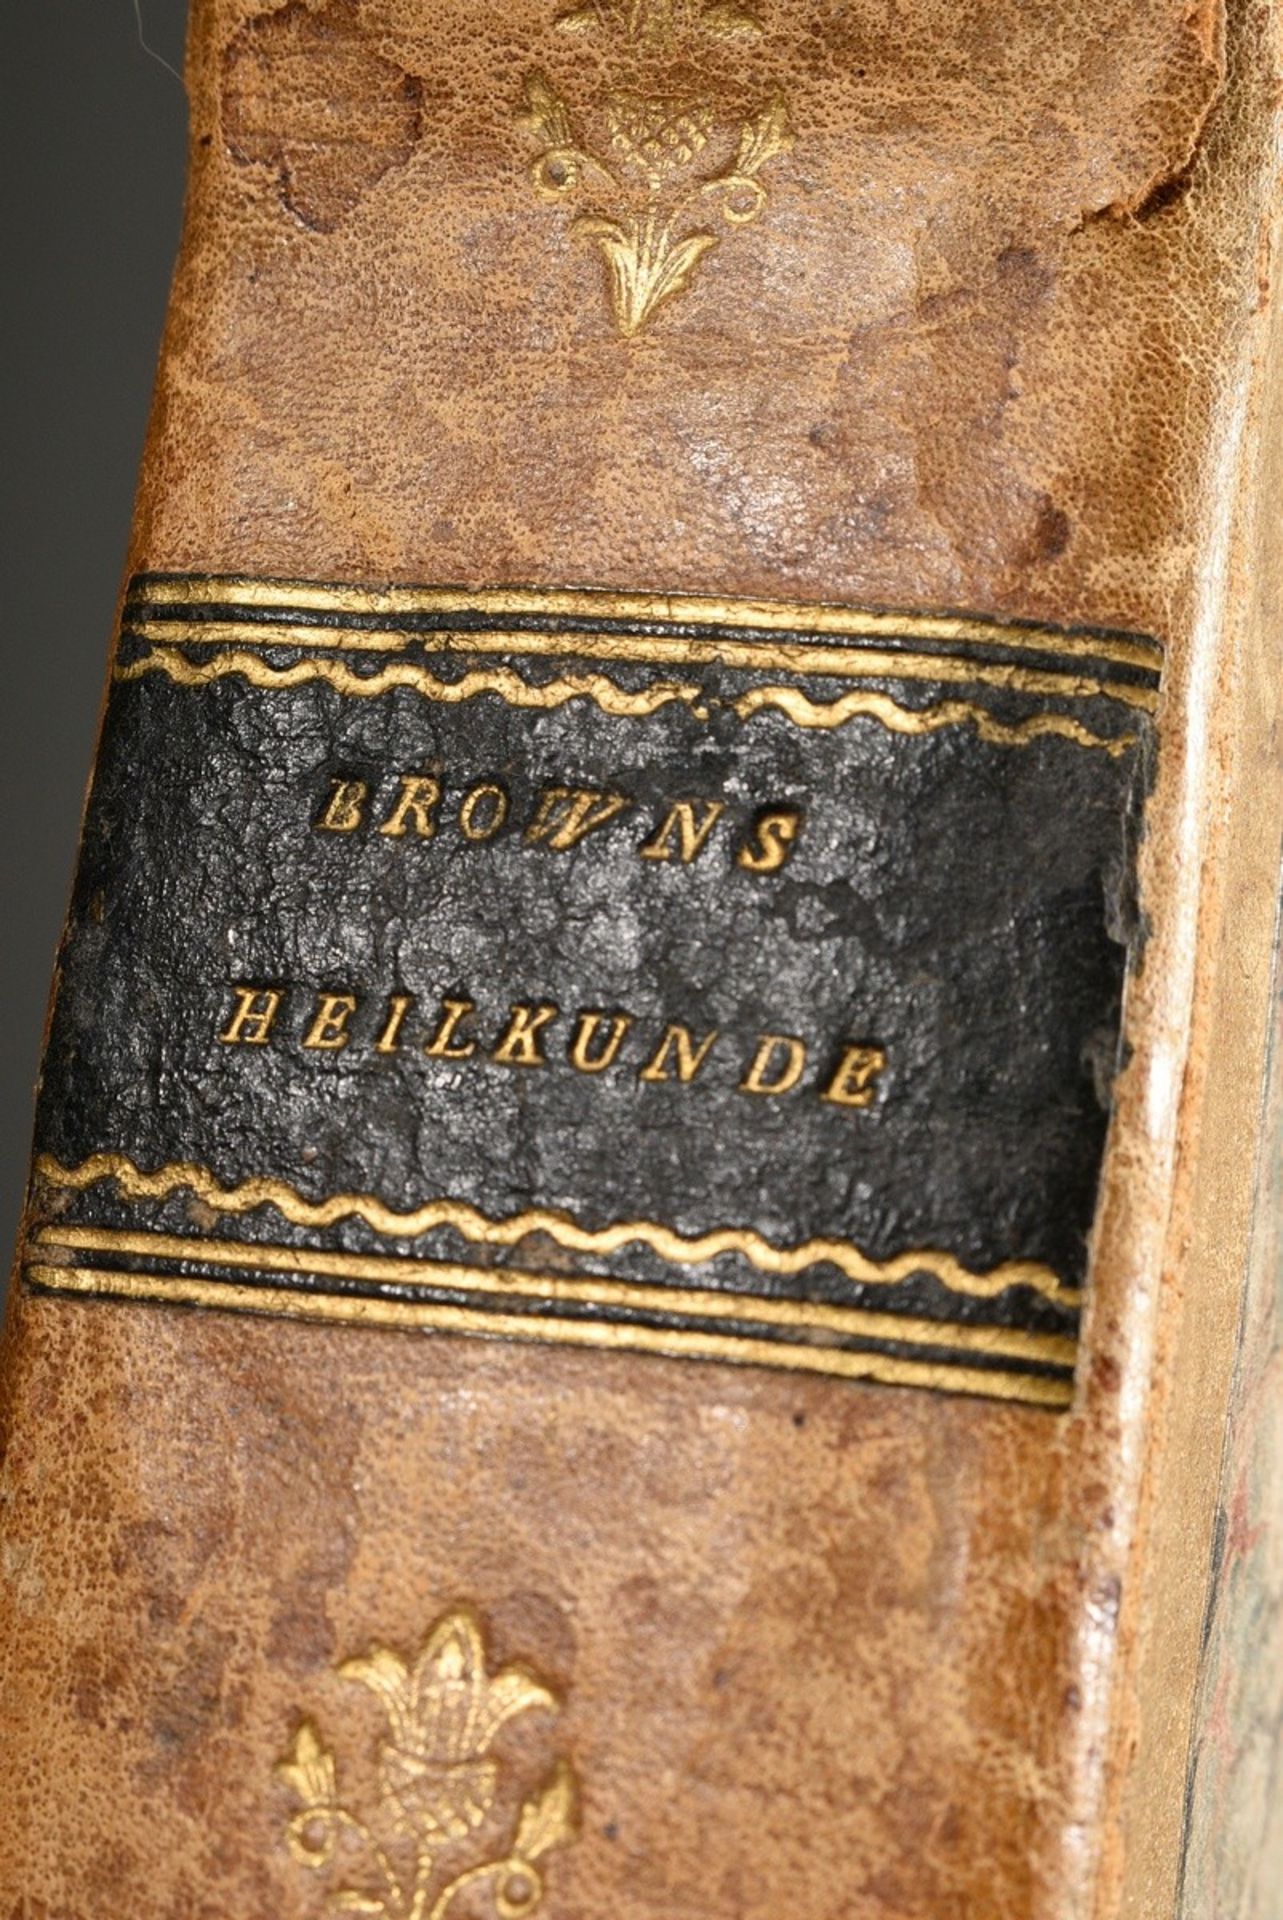 Band "John Brown's System der Heilkunde", Wien 1807, 3. Ausgabe, Halbledereinband, 536 S., 21x12,5x - Bild 3 aus 5